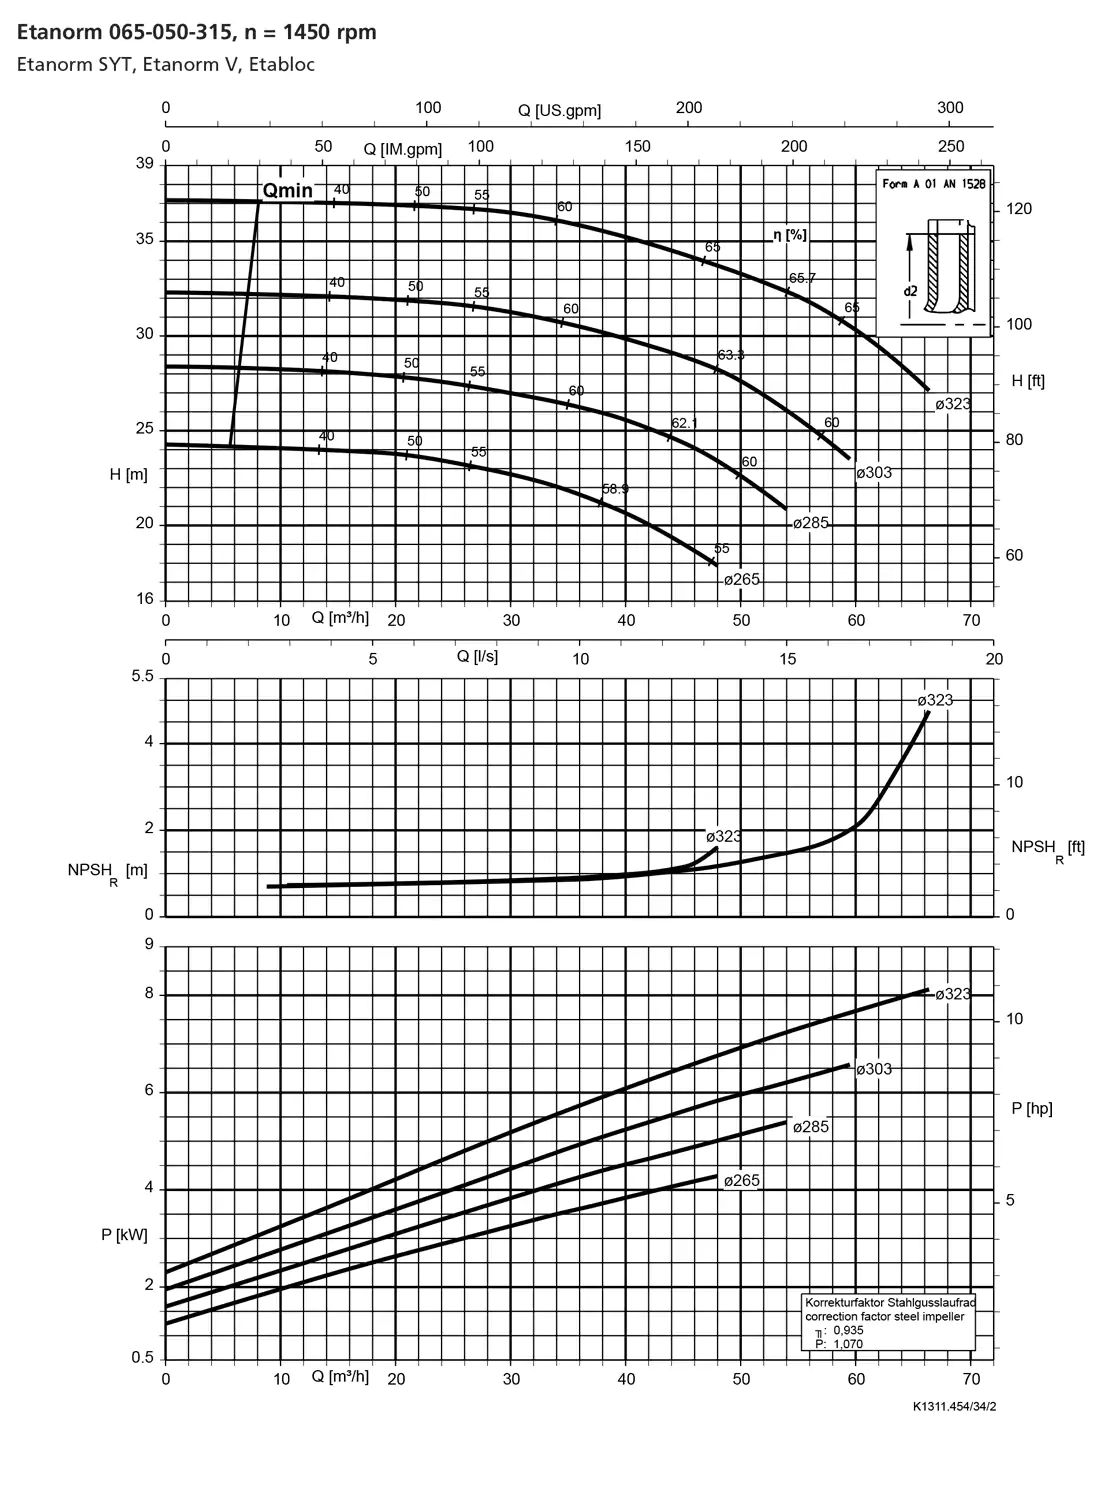 نمودار-کارکرد-پمپ-etanorm-65-050-315-1450